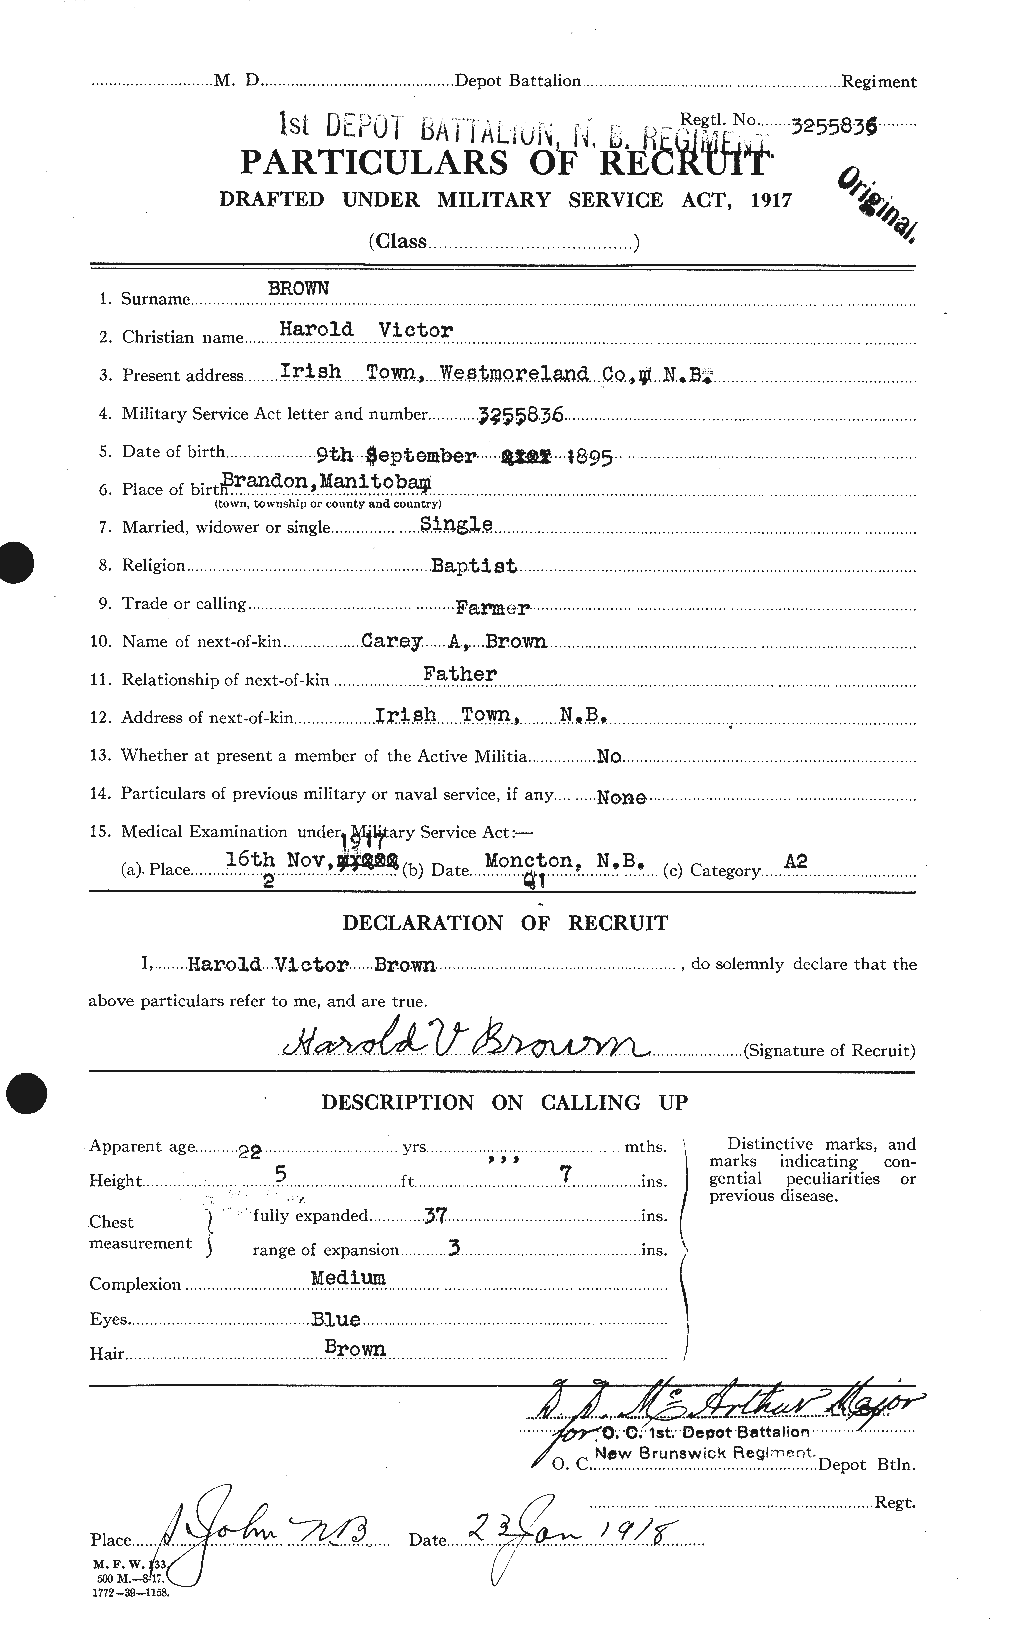 Dossiers du Personnel de la Première Guerre mondiale - CEC 265374a